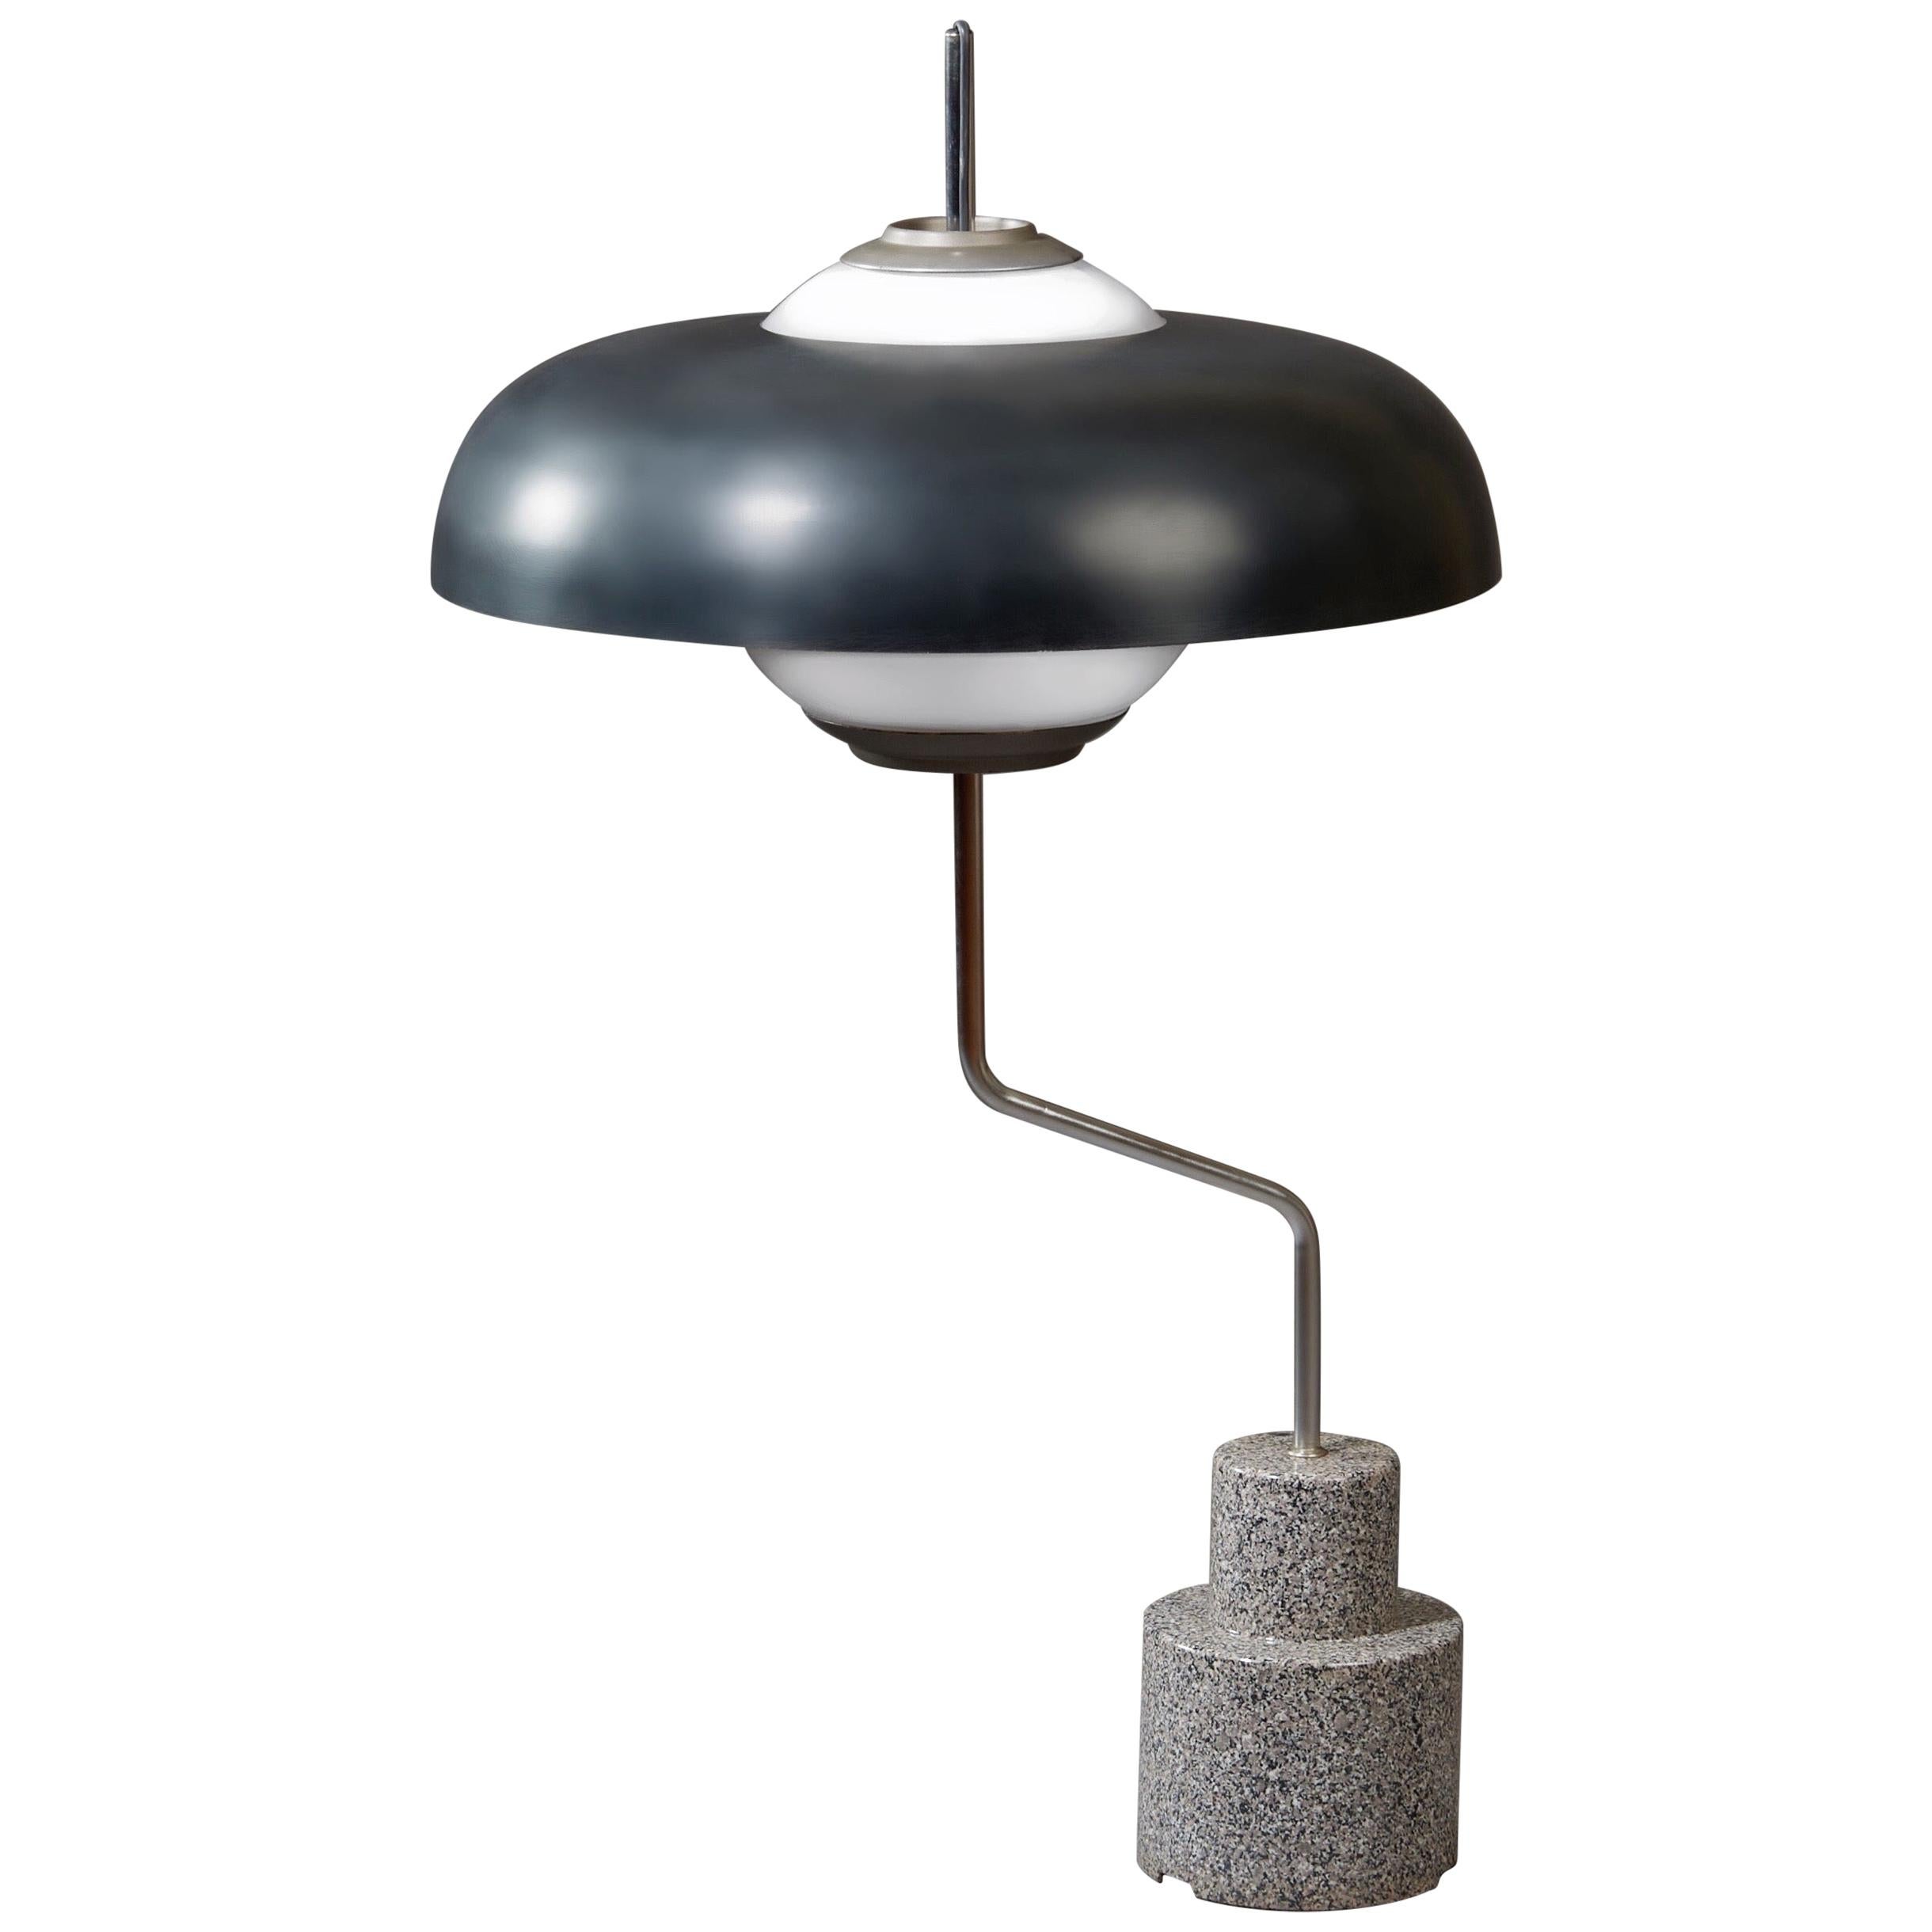 Luigi Caccia Dominioni Rare and Monumental Mikado Table Lamp, Italy, circa 1963 For Sale